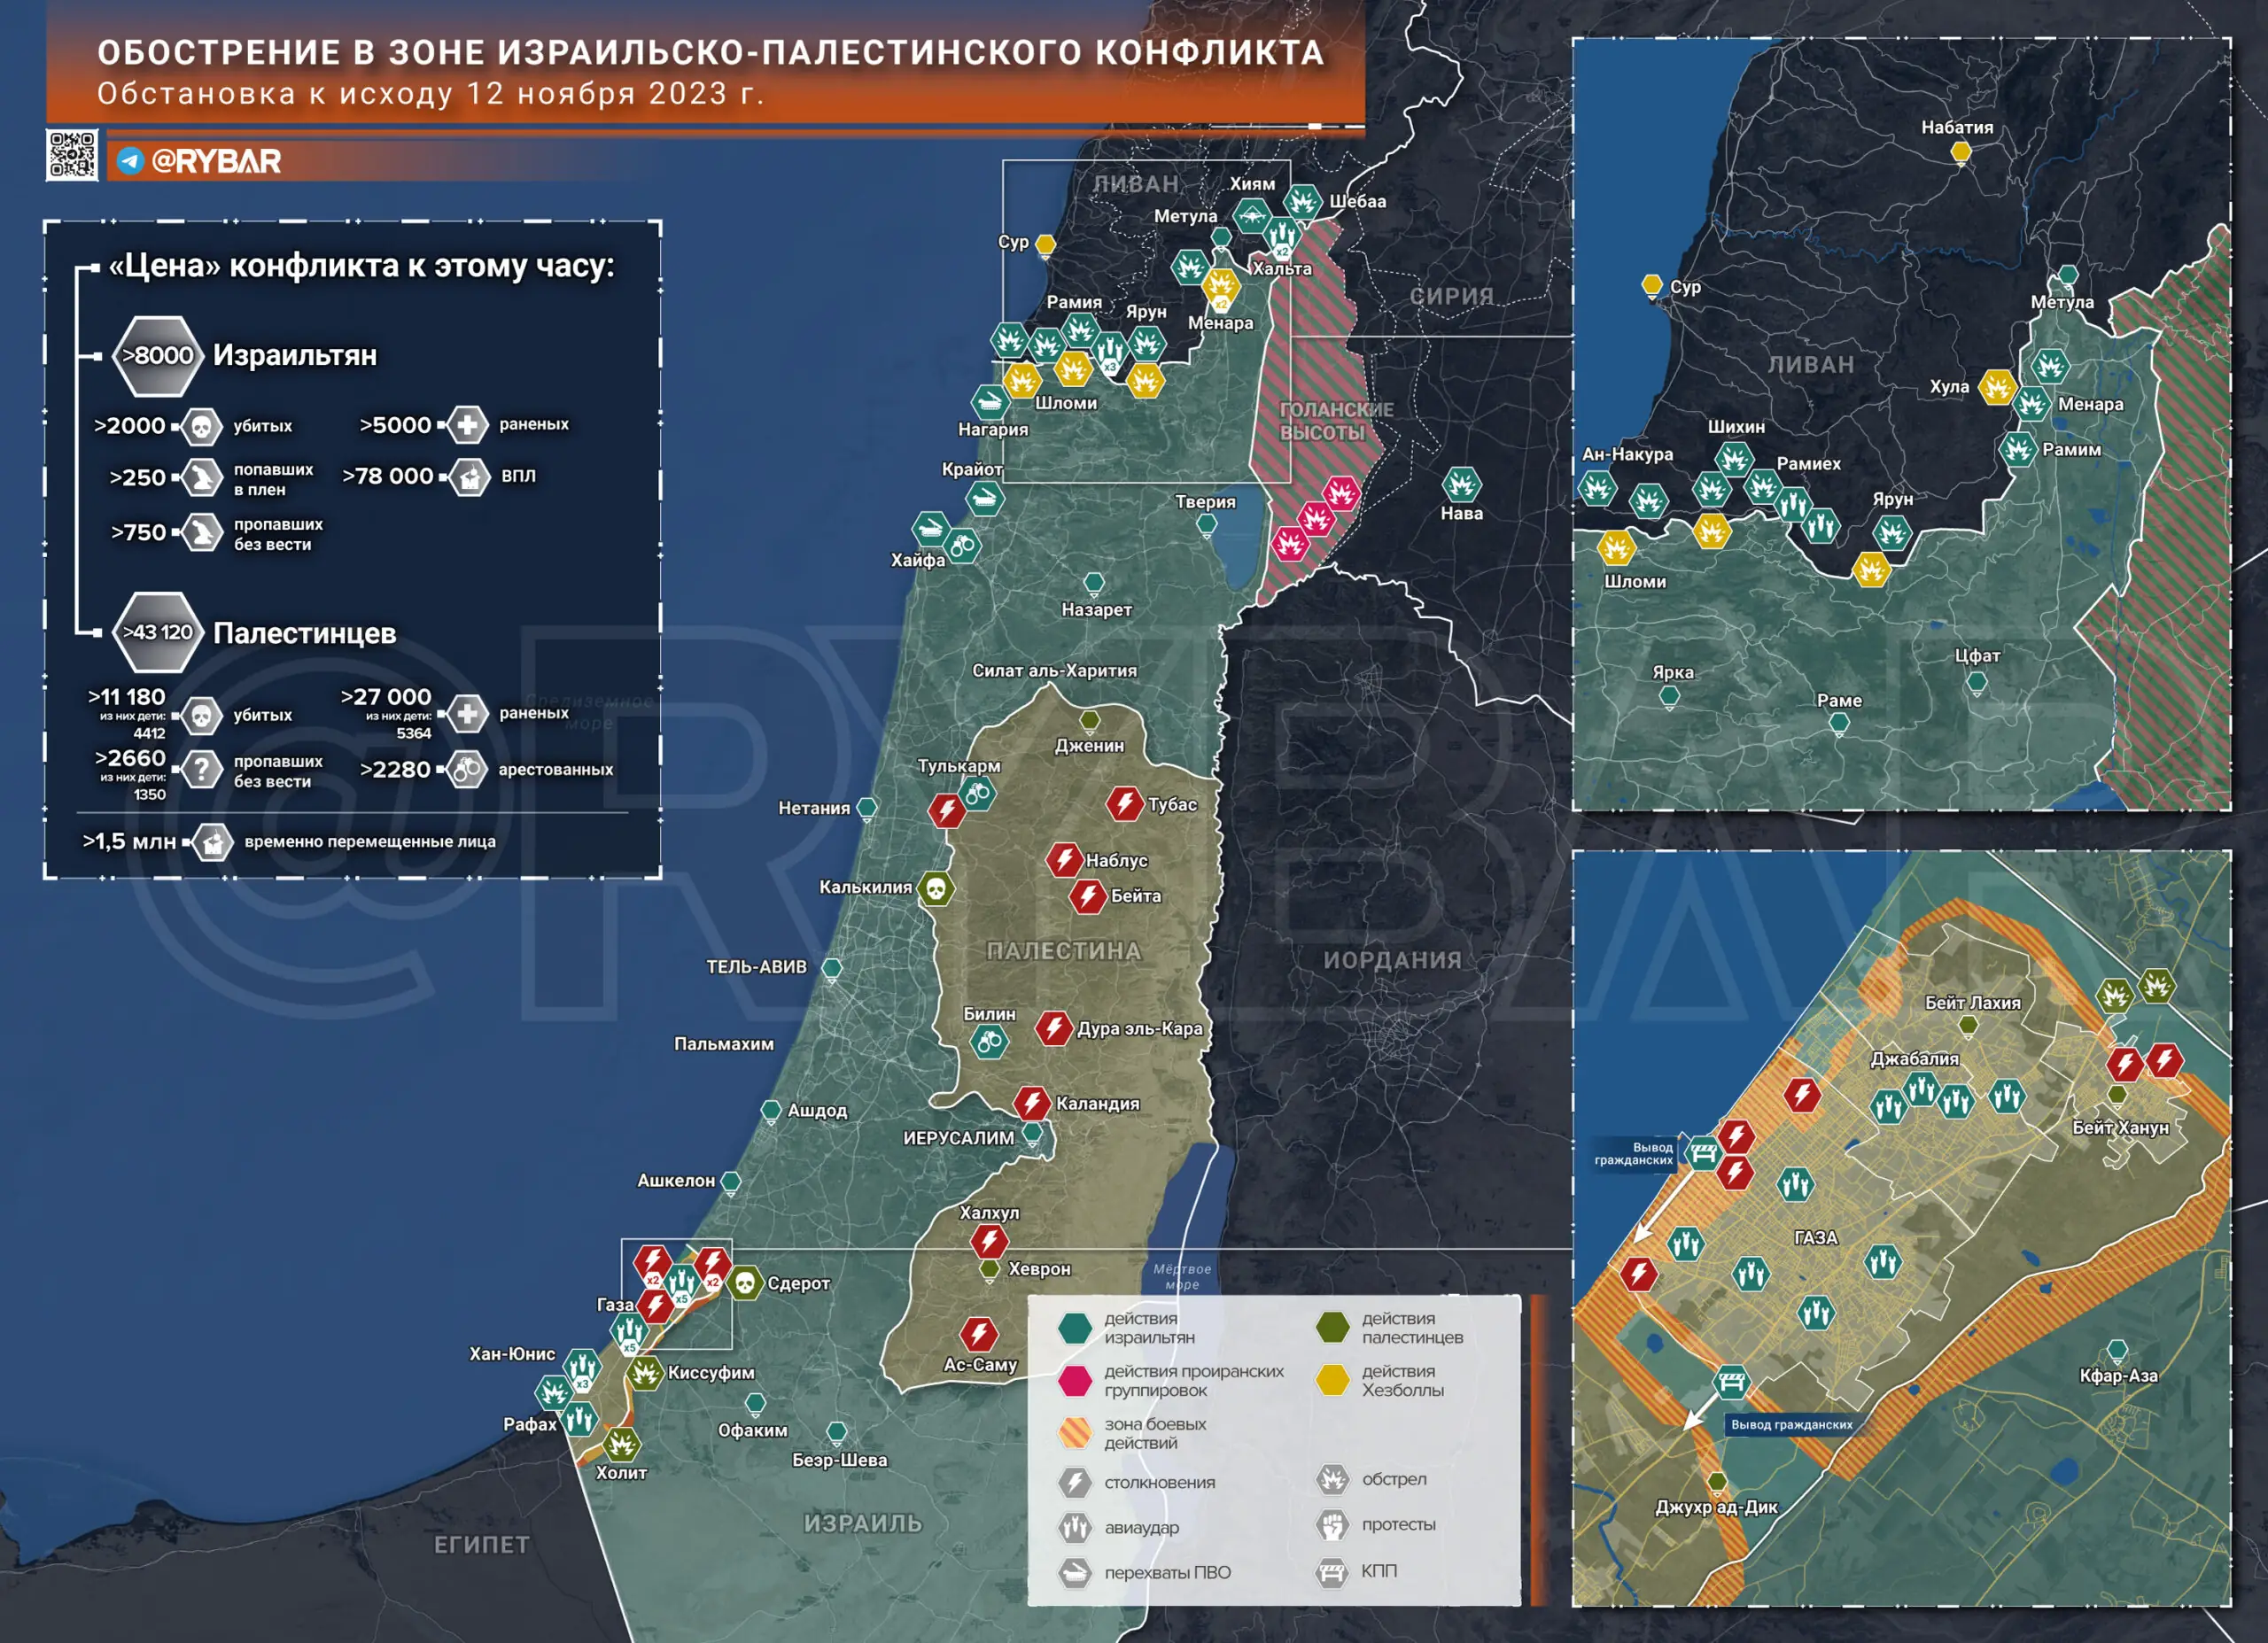 Τι συμβαίνει στην Παλαιστίνη και το Ισραήλ: χρονικό της 12ης Νοεμβρίου